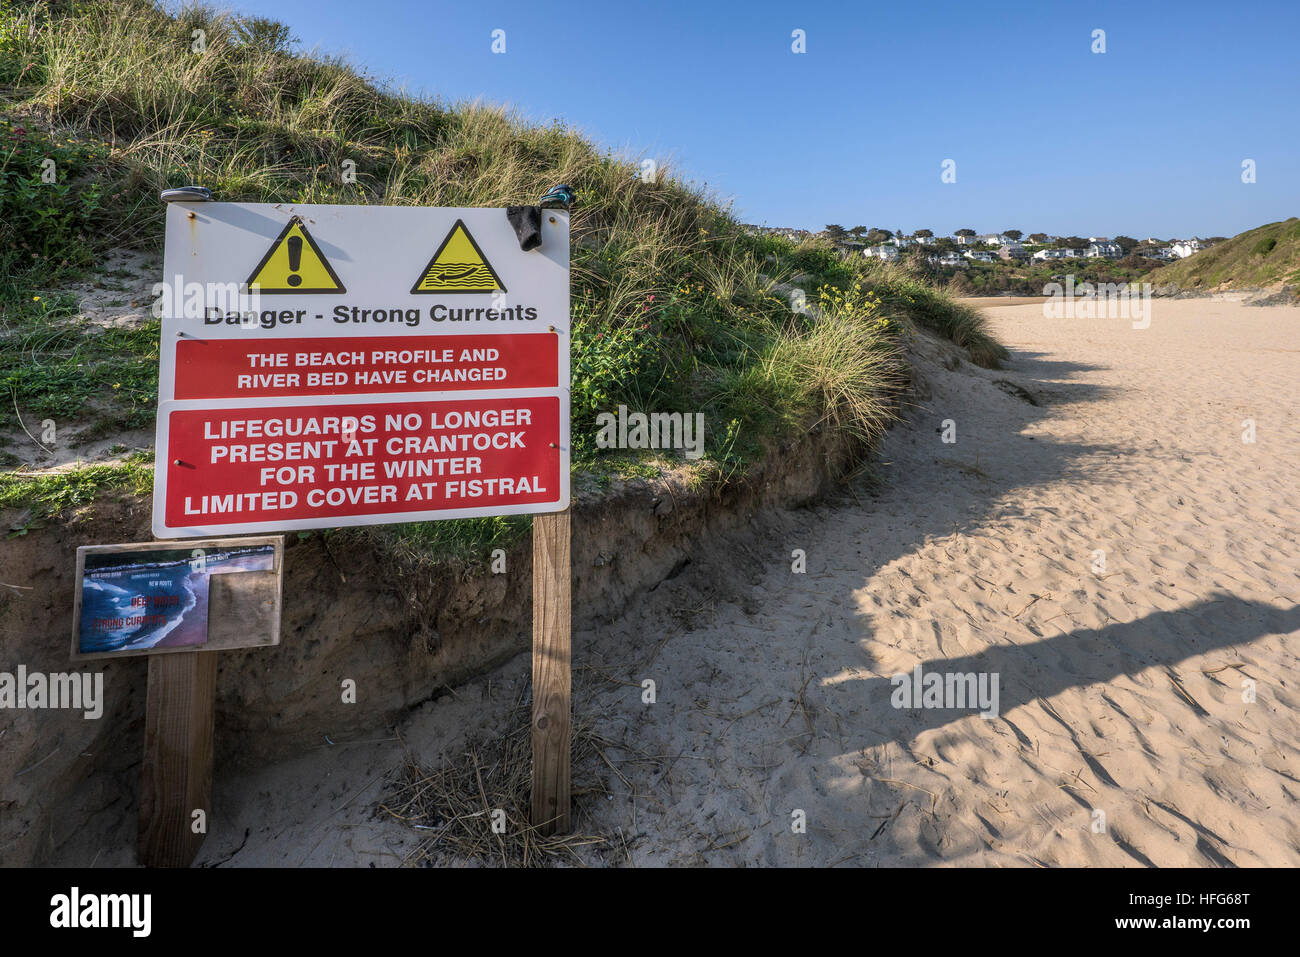 Un signal d'information sur la plage de Crantock primé à Newquay, Cornwall. Banque D'Images